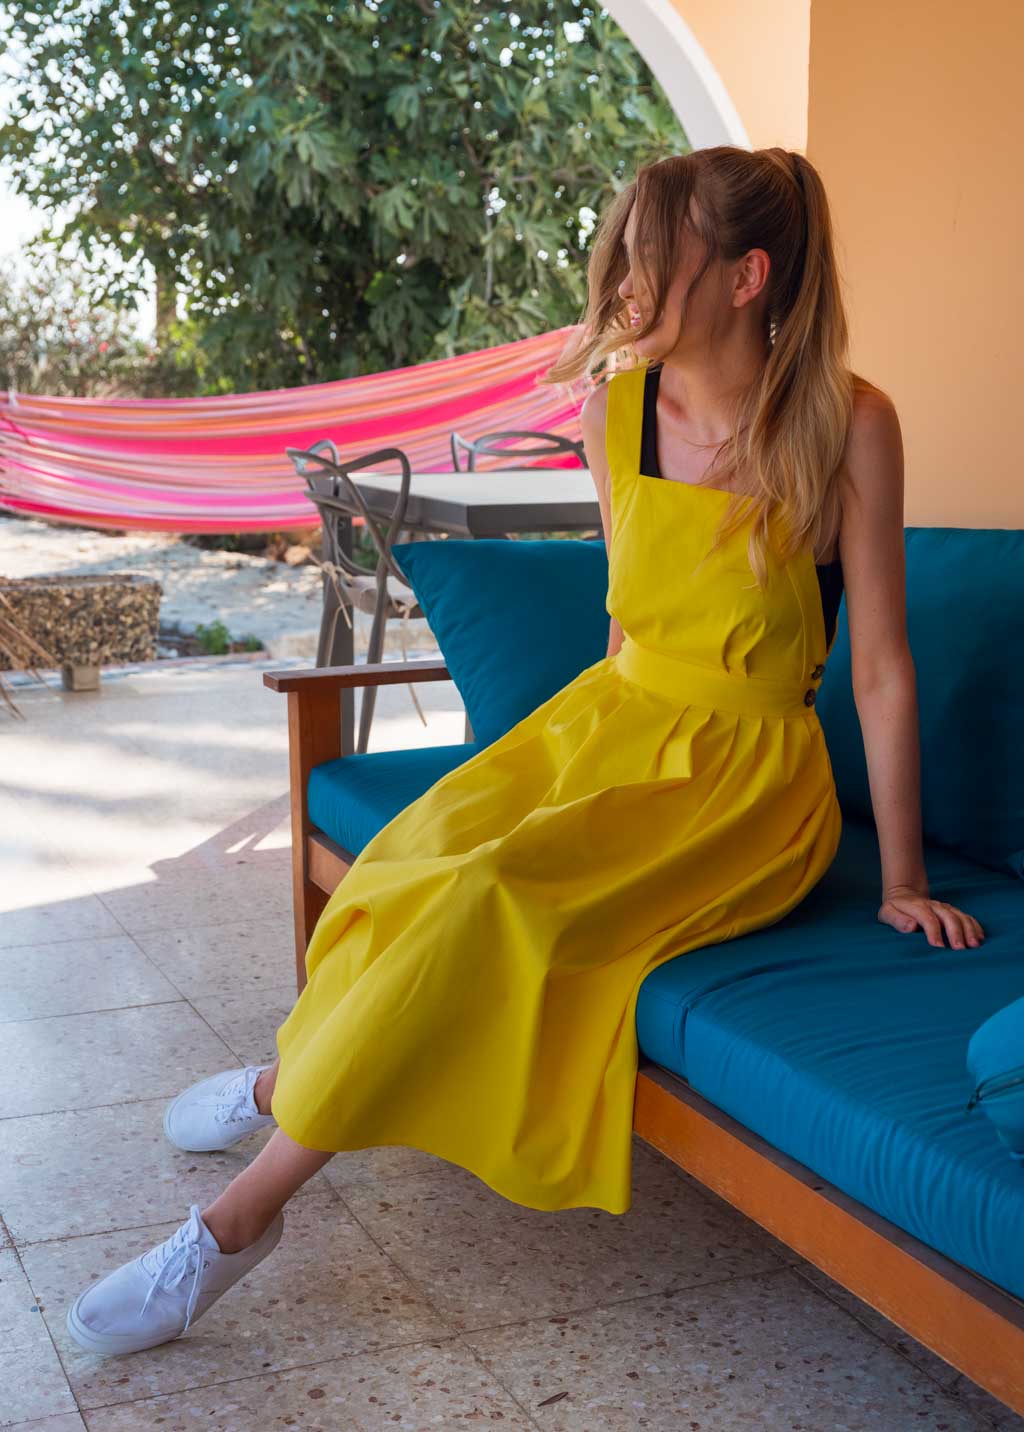 Yellow organic cotton cross-back dress